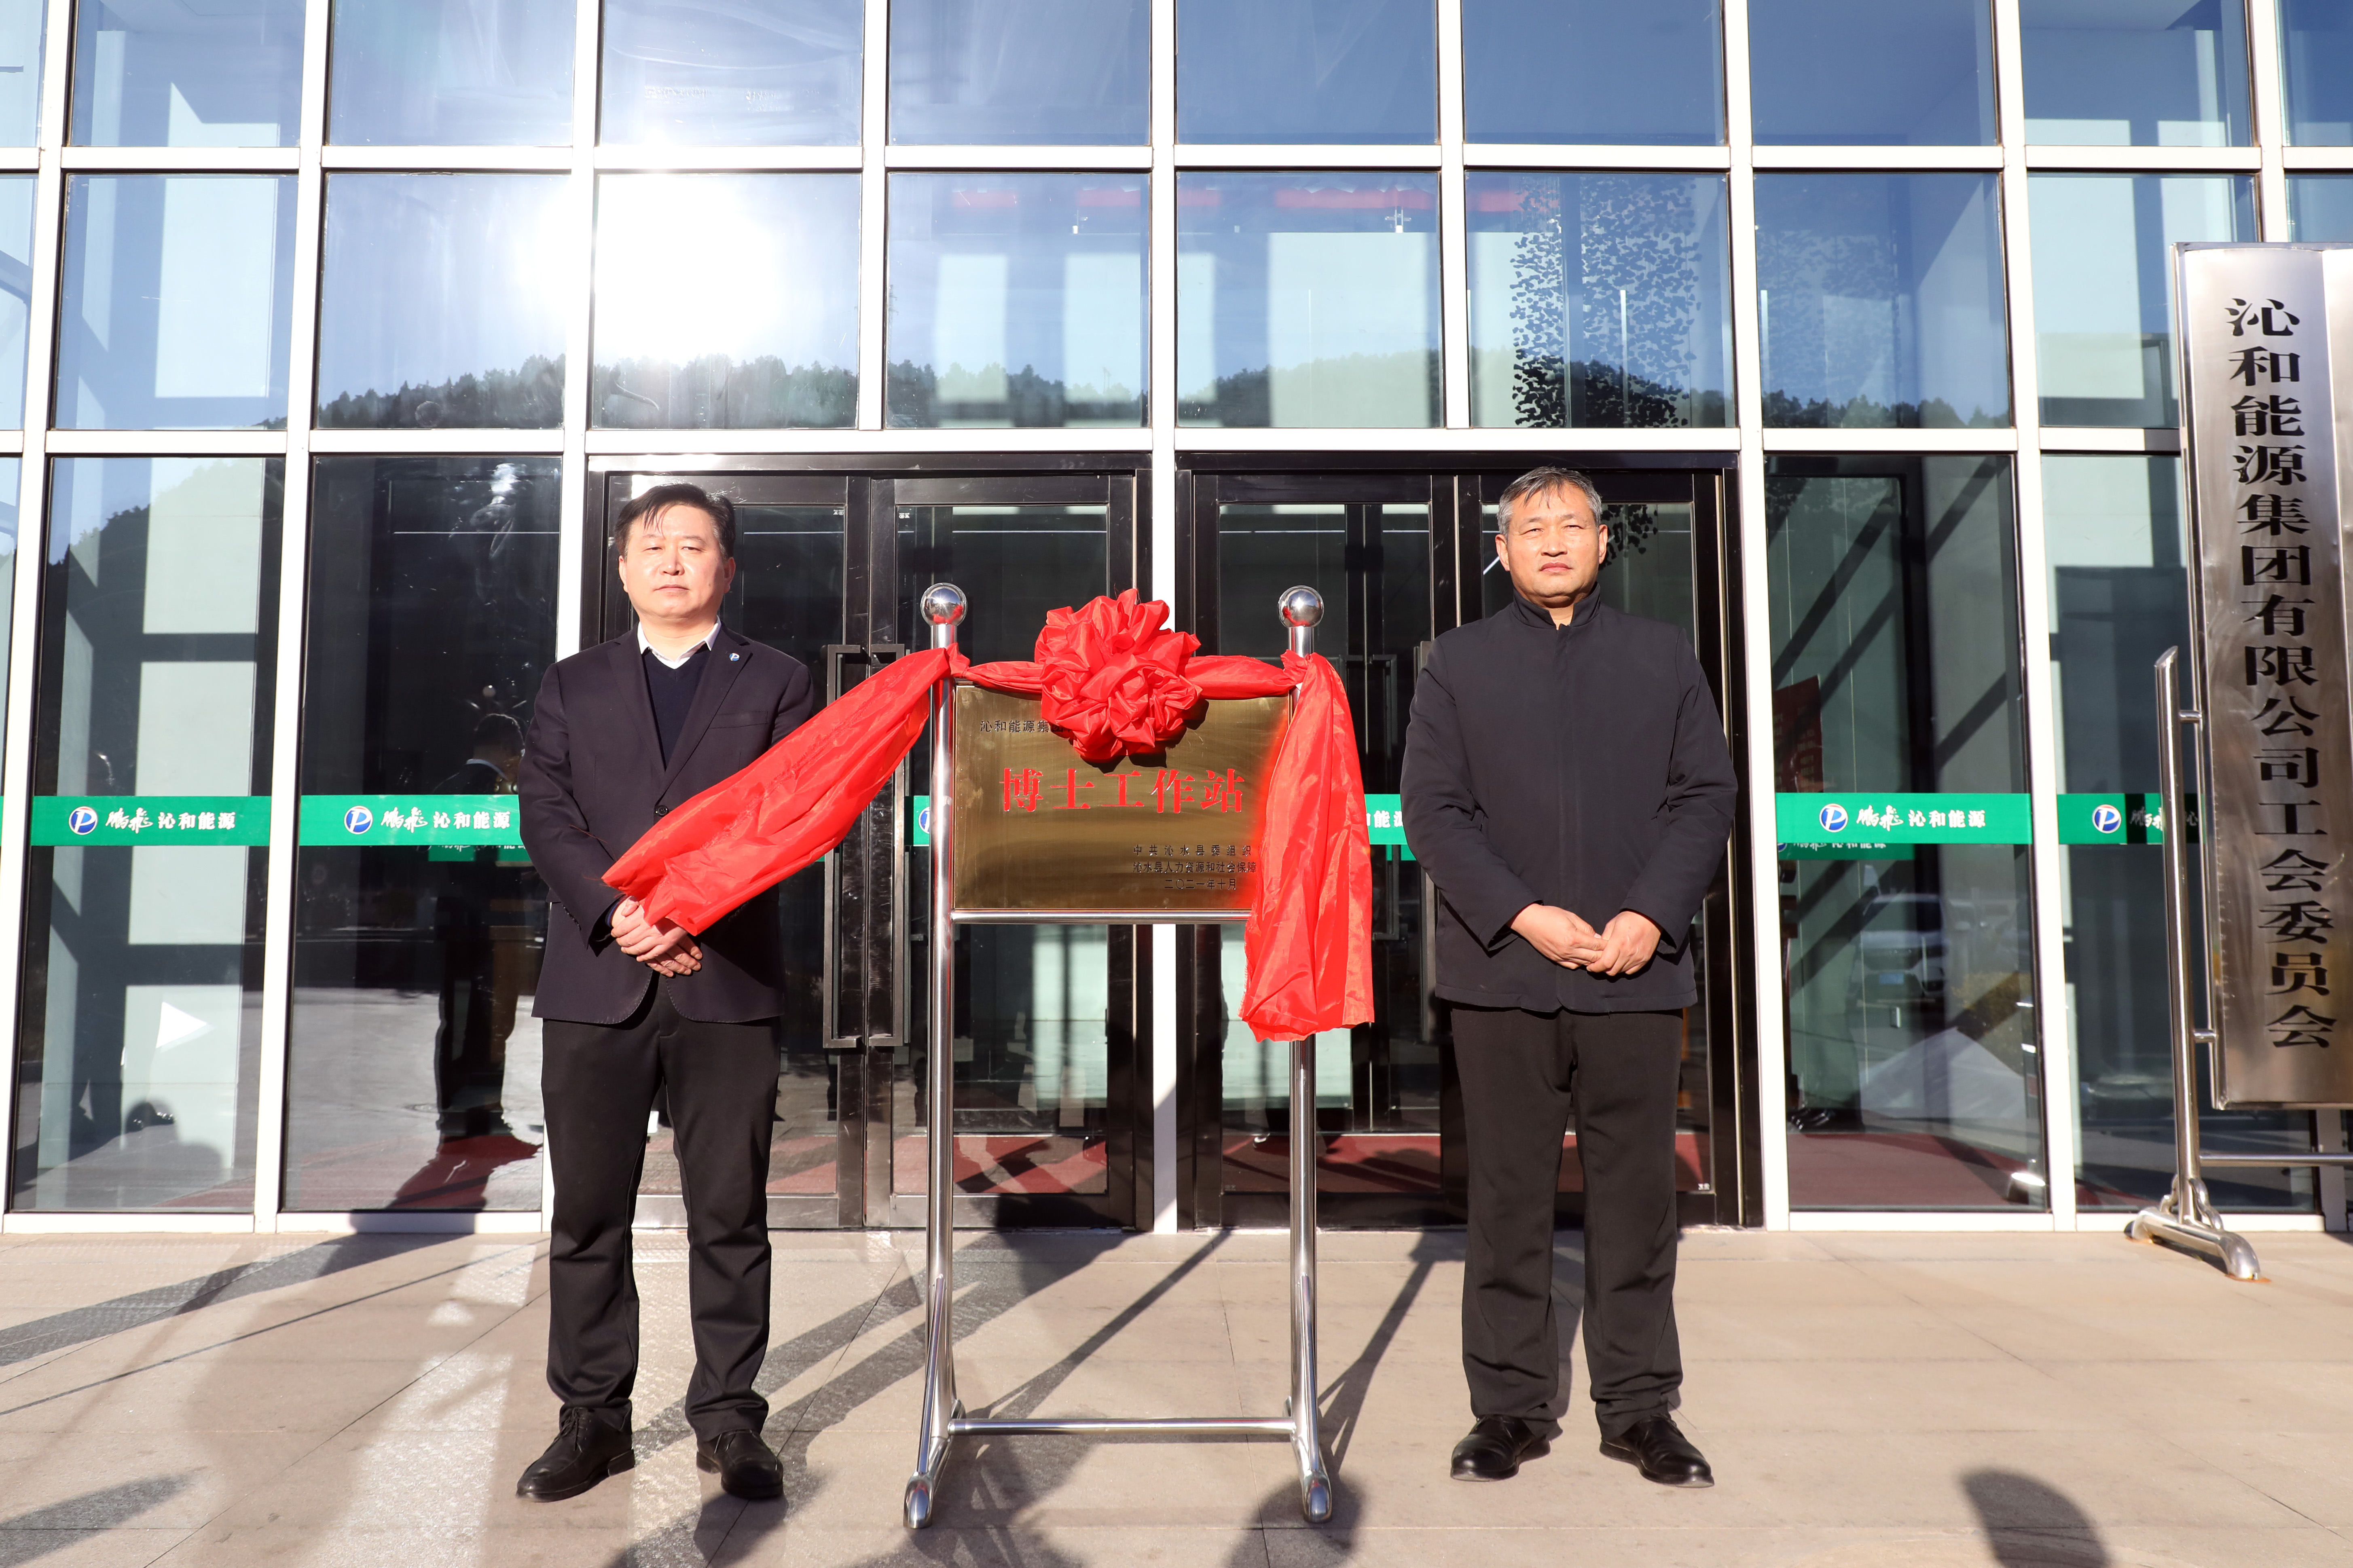 鵬飛沁和博士工作站正式揭牌成立